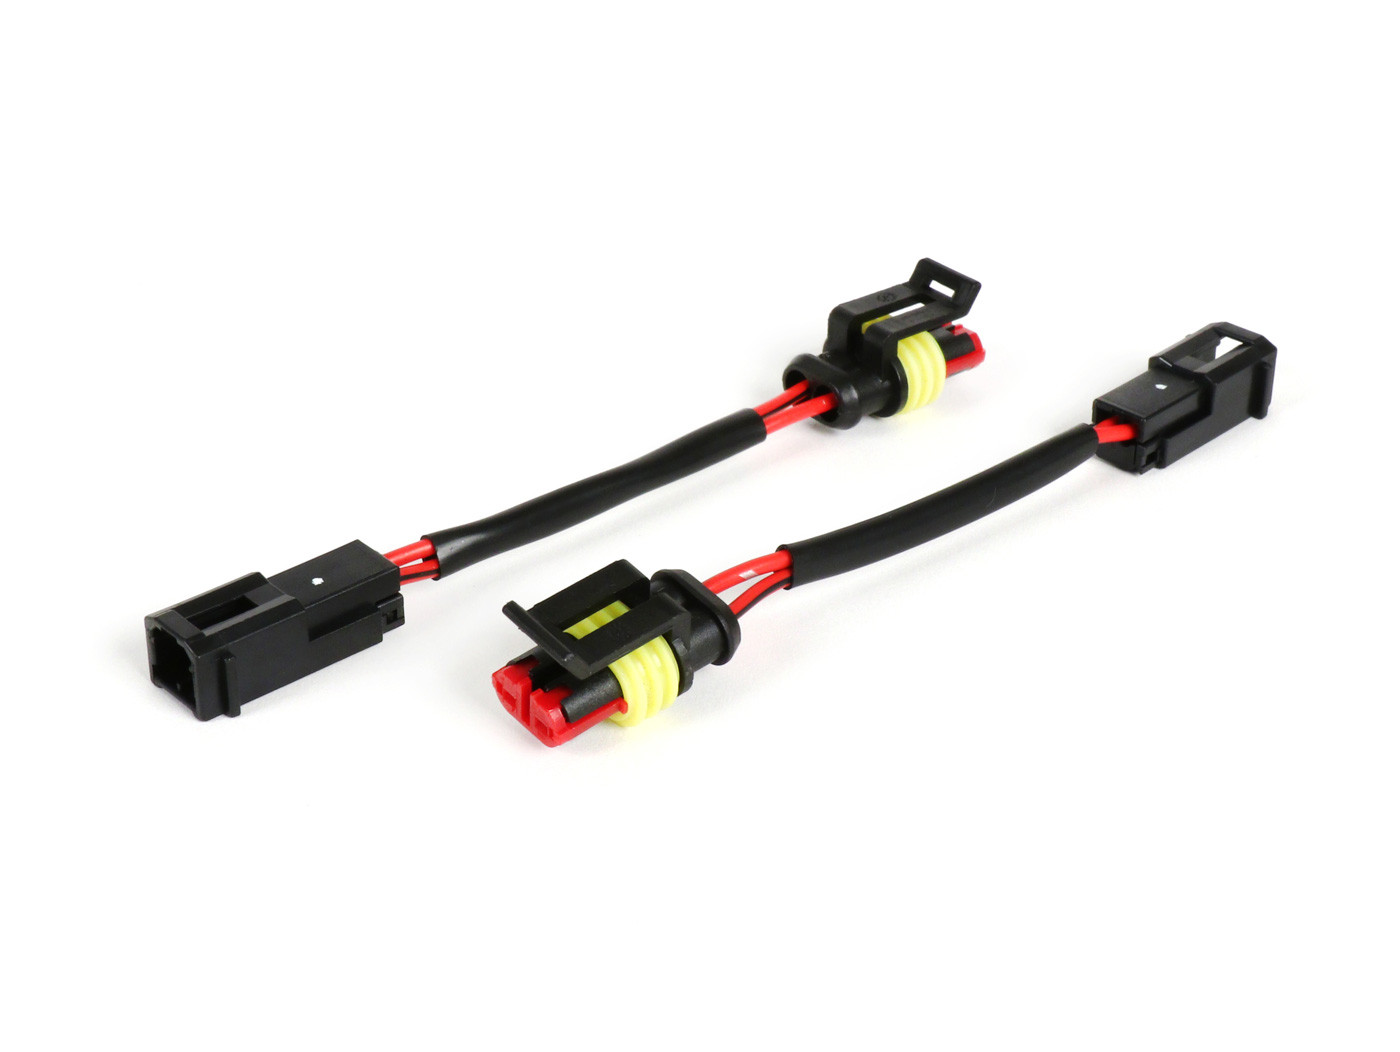 Kábel adapter készlet jelző átalakítás BGM PRO Crossover frissítés 2003-2013 => 2014 Vespa GTS hátsó használt irányjelző 2014-es gyártási évtől 2014-es gyártási év előtti járművekben 2014-es gyártási év előtti járművekhez